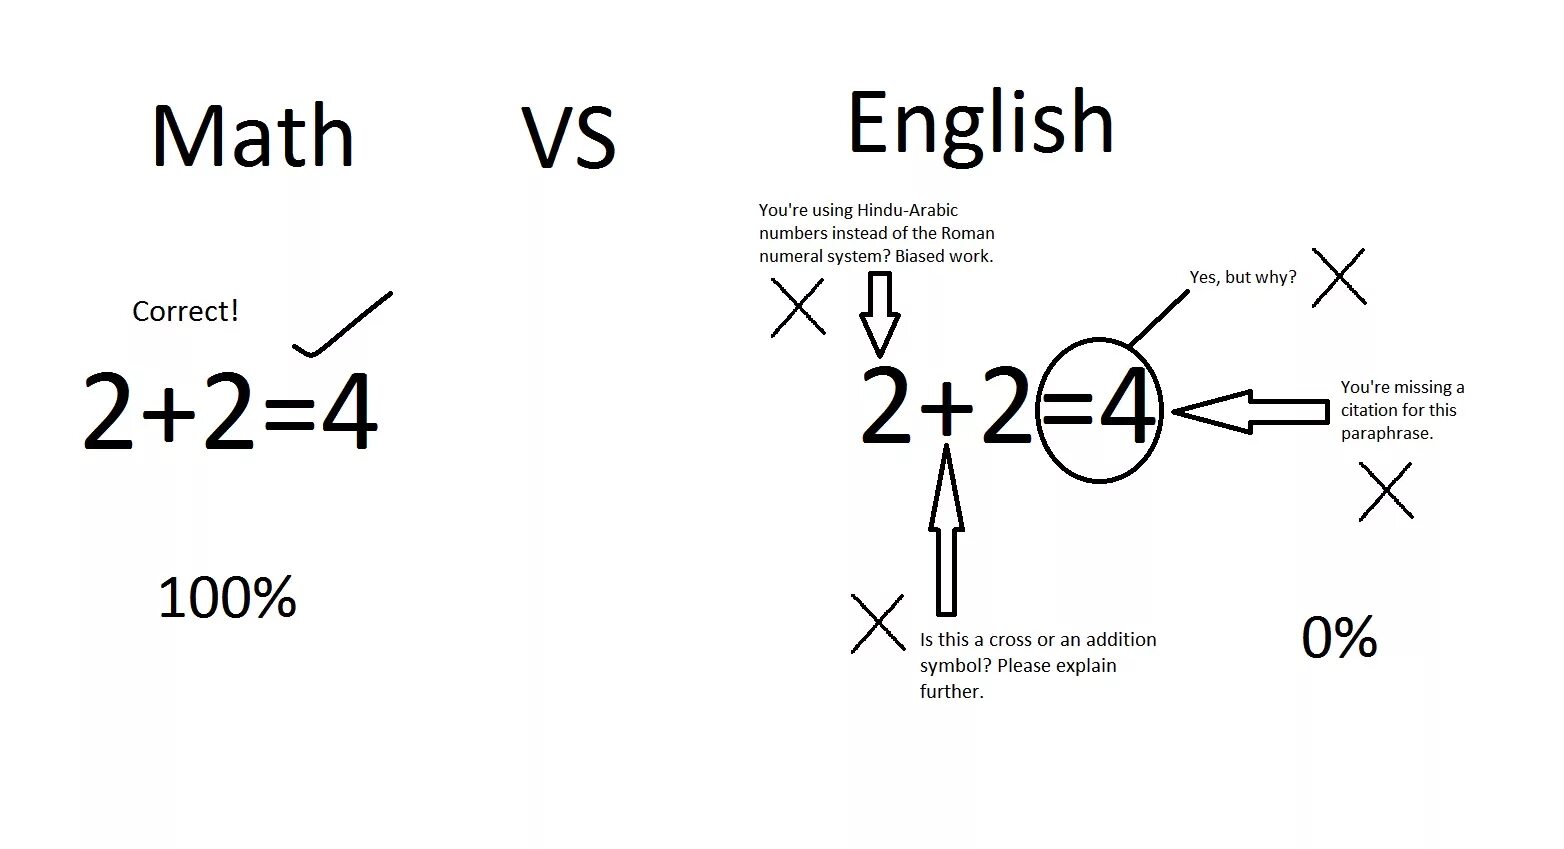 English mathematics. English Math. Math in English. Math на английском. English Math symbols.